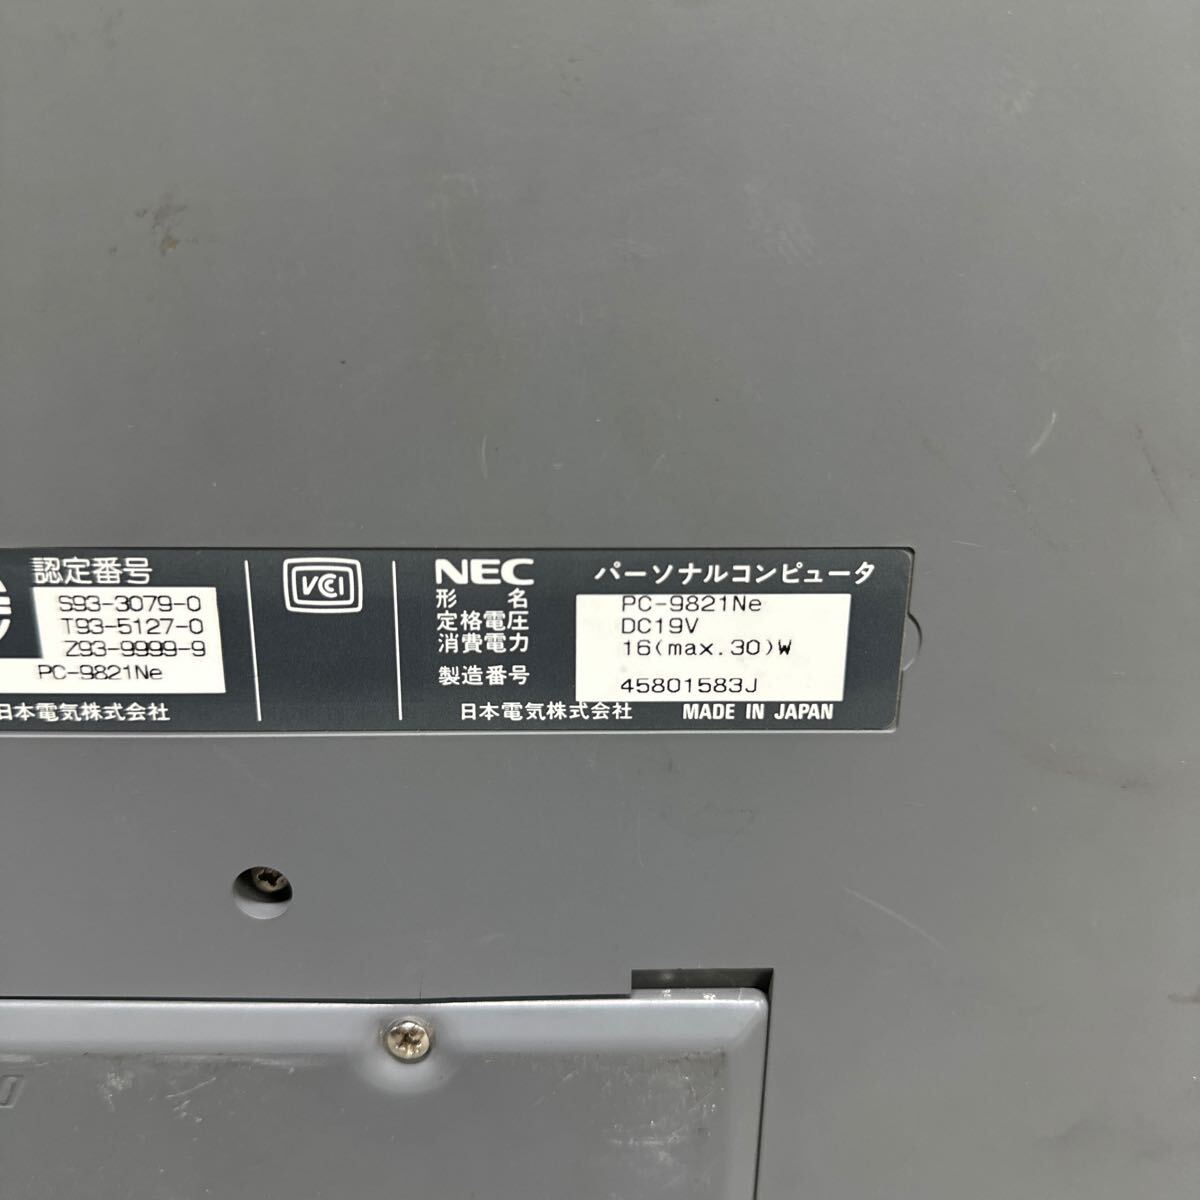 PCN98-1780 супер-скидка PC98 ноутбук NEC 98note PC-9821Ne пуск подтверждено Junk включение в покупку возможность 